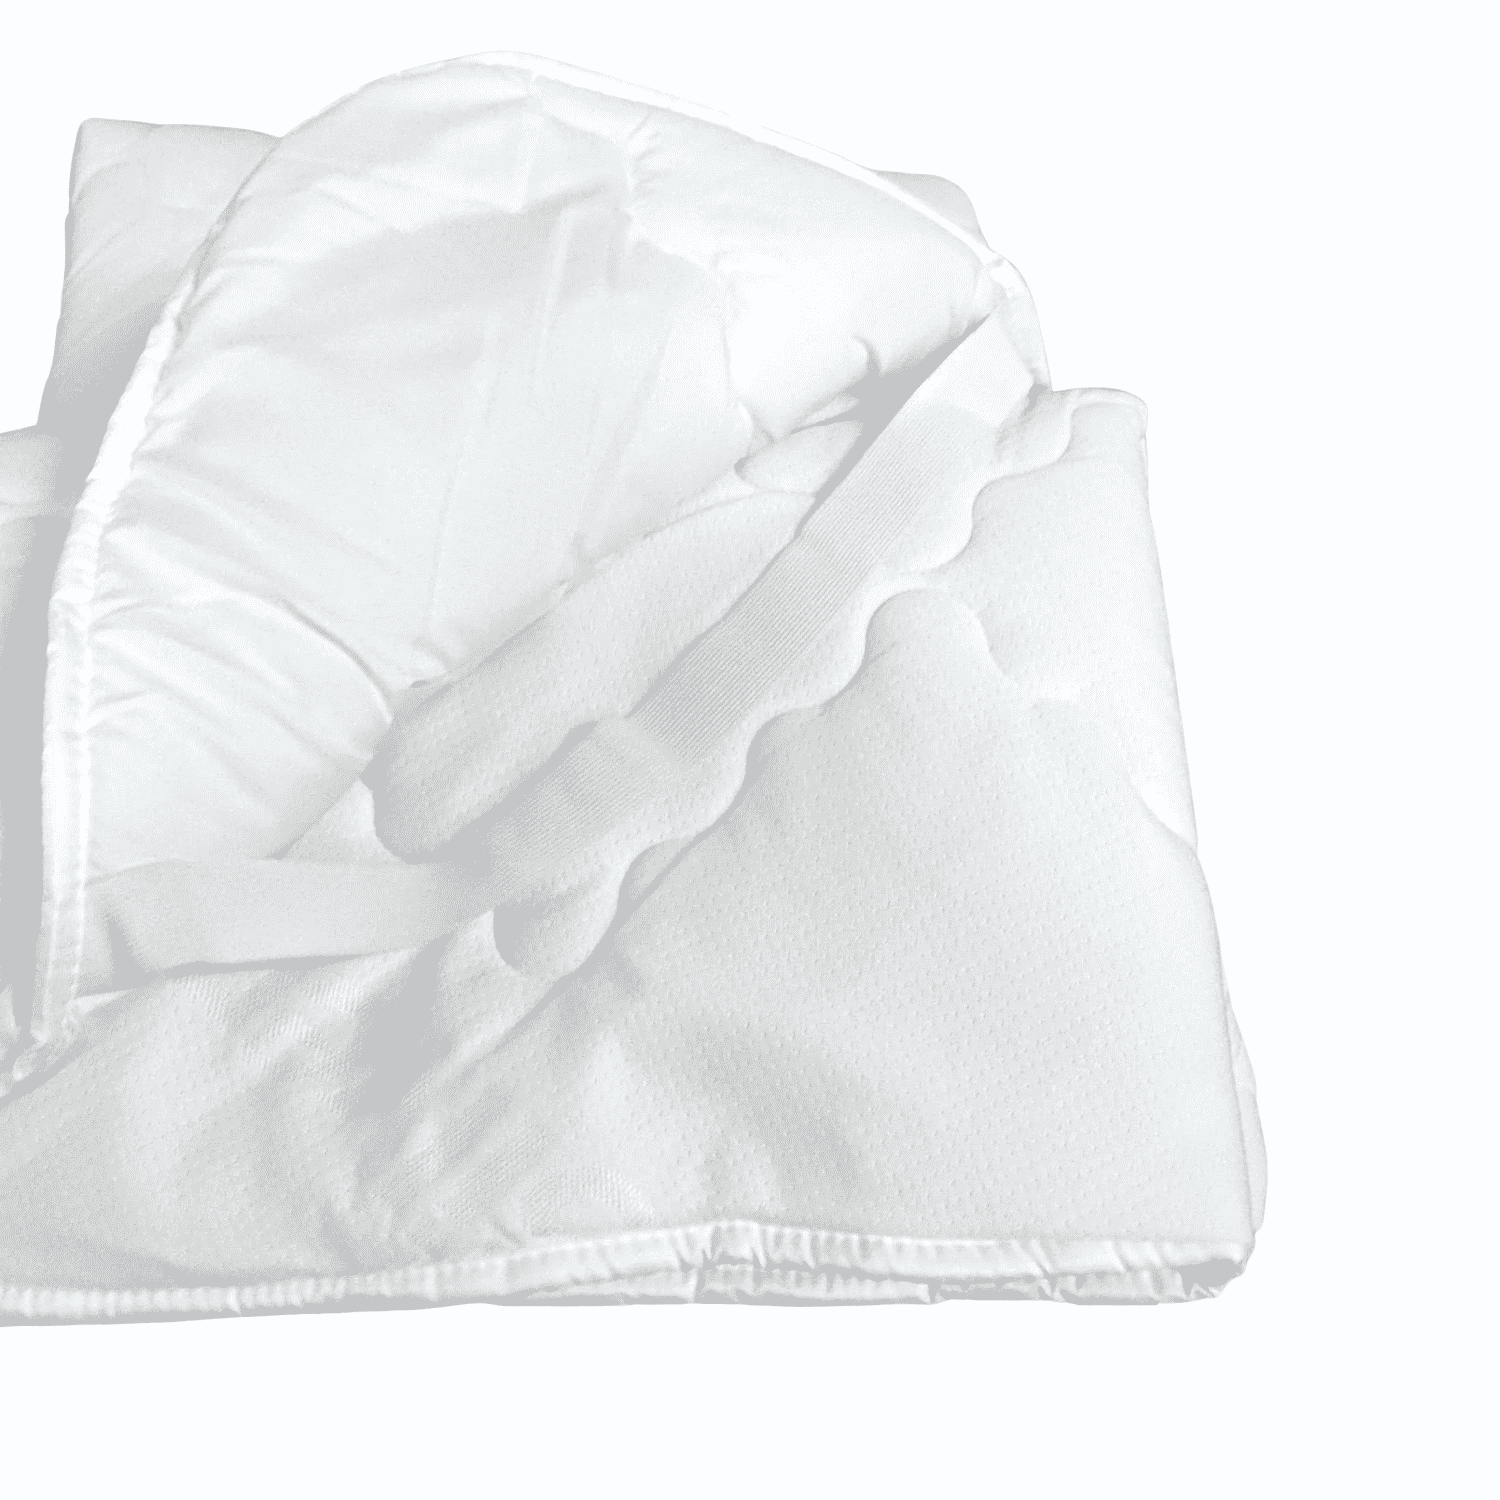 Dettaglio-topper-materasso-elastico-bianco-matrimoniale-reversibile-ioni-argento-microfibra-dettaglio